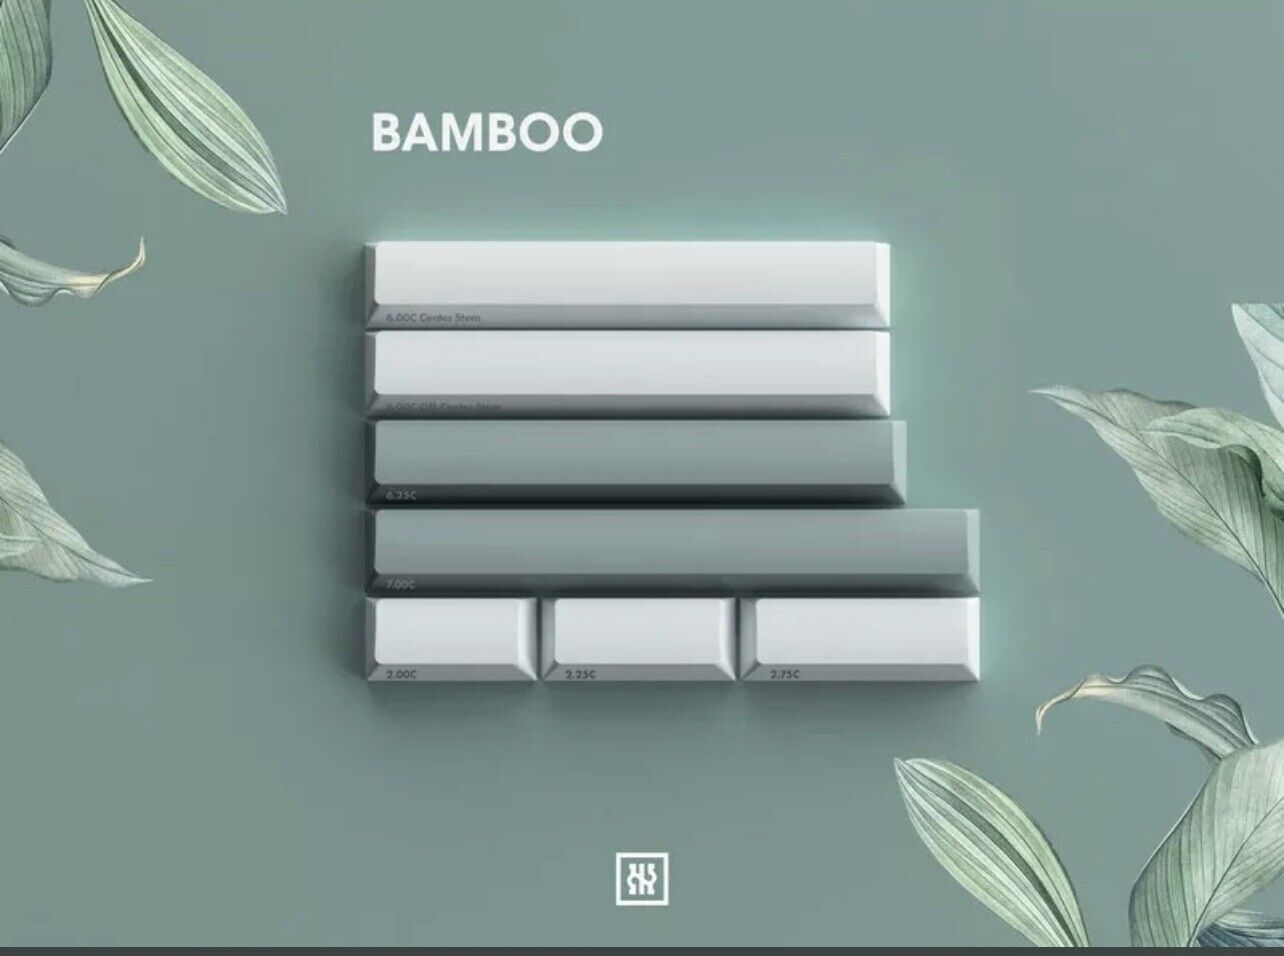 GMK Botanical Bamboo Kit (Spacebars) Doubleshot Keycap Keyset SEALED